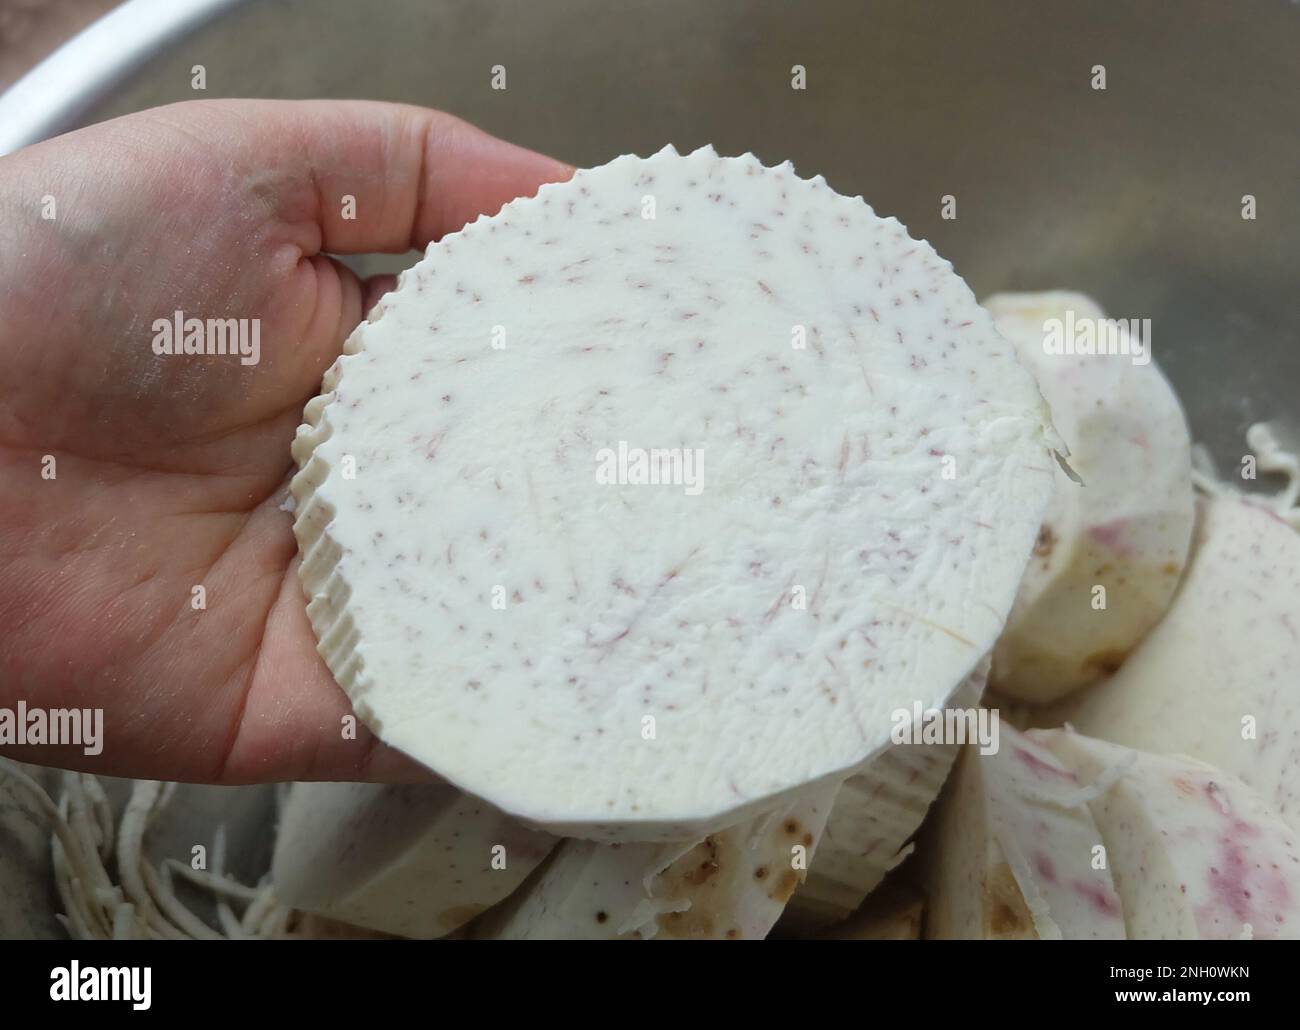 Handhalter mit frisch geschnittenen Taro-Wurzeln, Dasheen, japanischen Kartoffeln, Cocoyam oder Eddo. Stockfoto